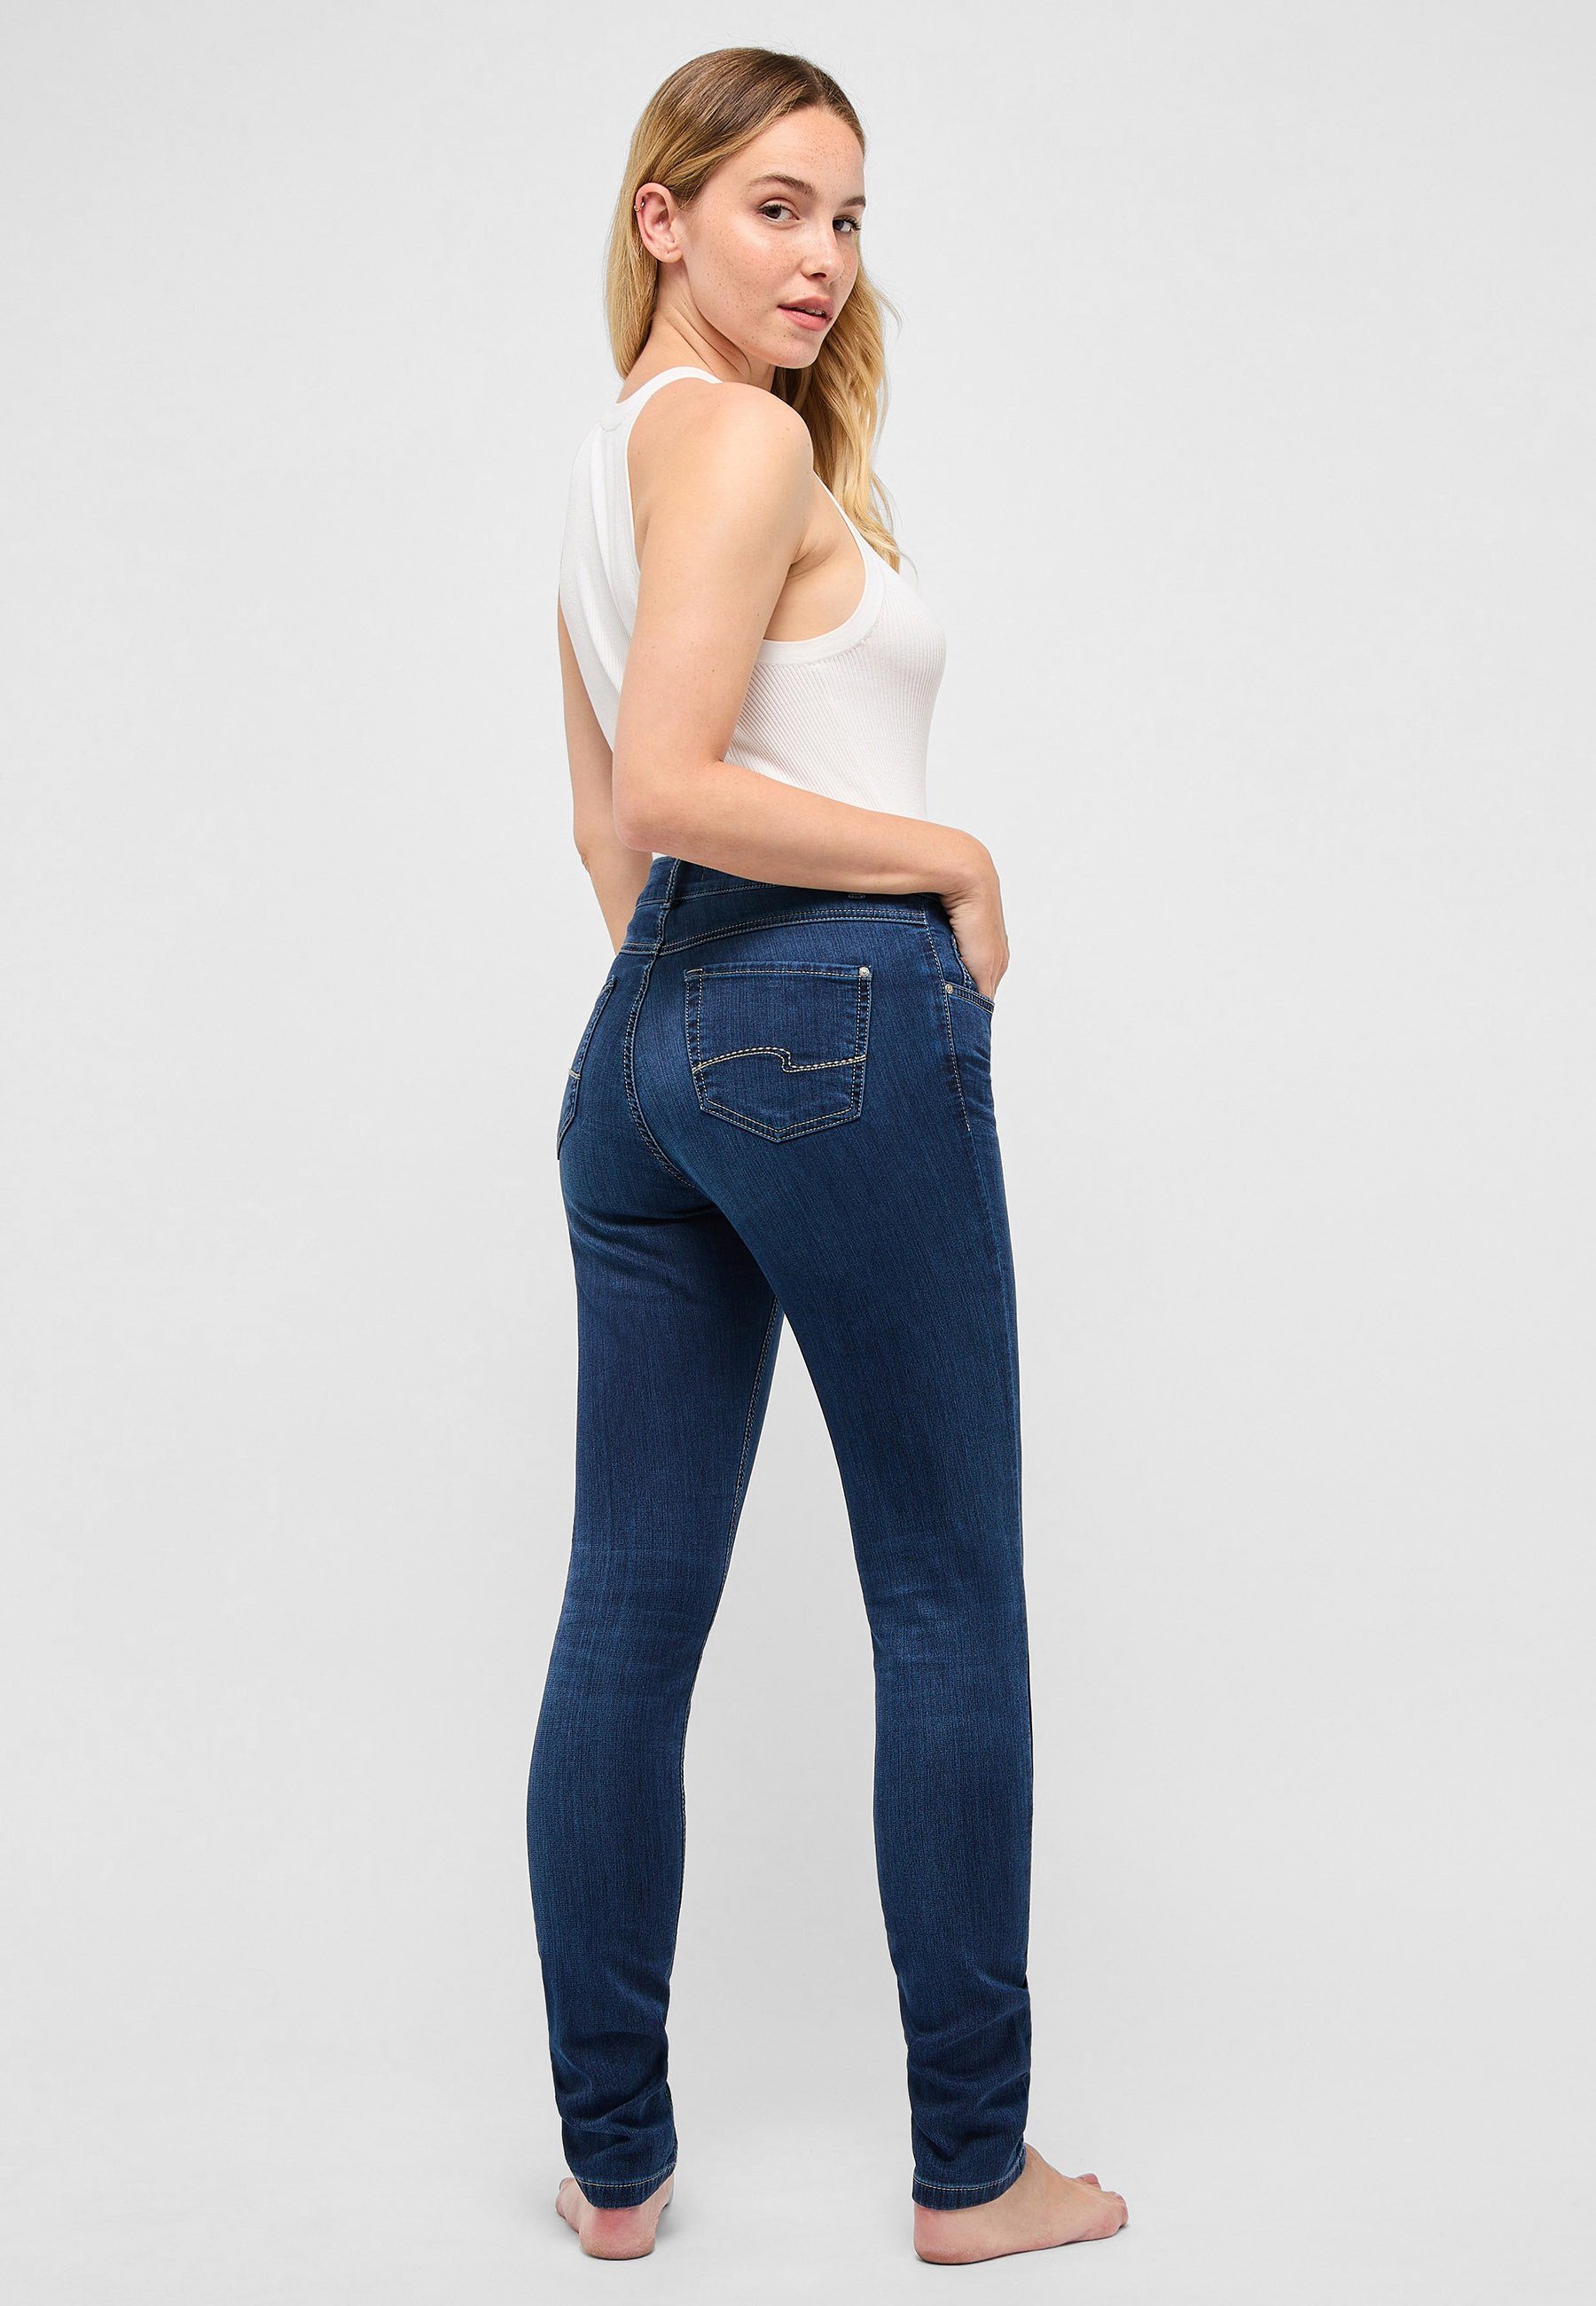 mit mit unifarbenem Stoff Skinny-fit-Jeans Skinny Label-Applikationen Slim-fit-Jeans dunkelblau ANGELS